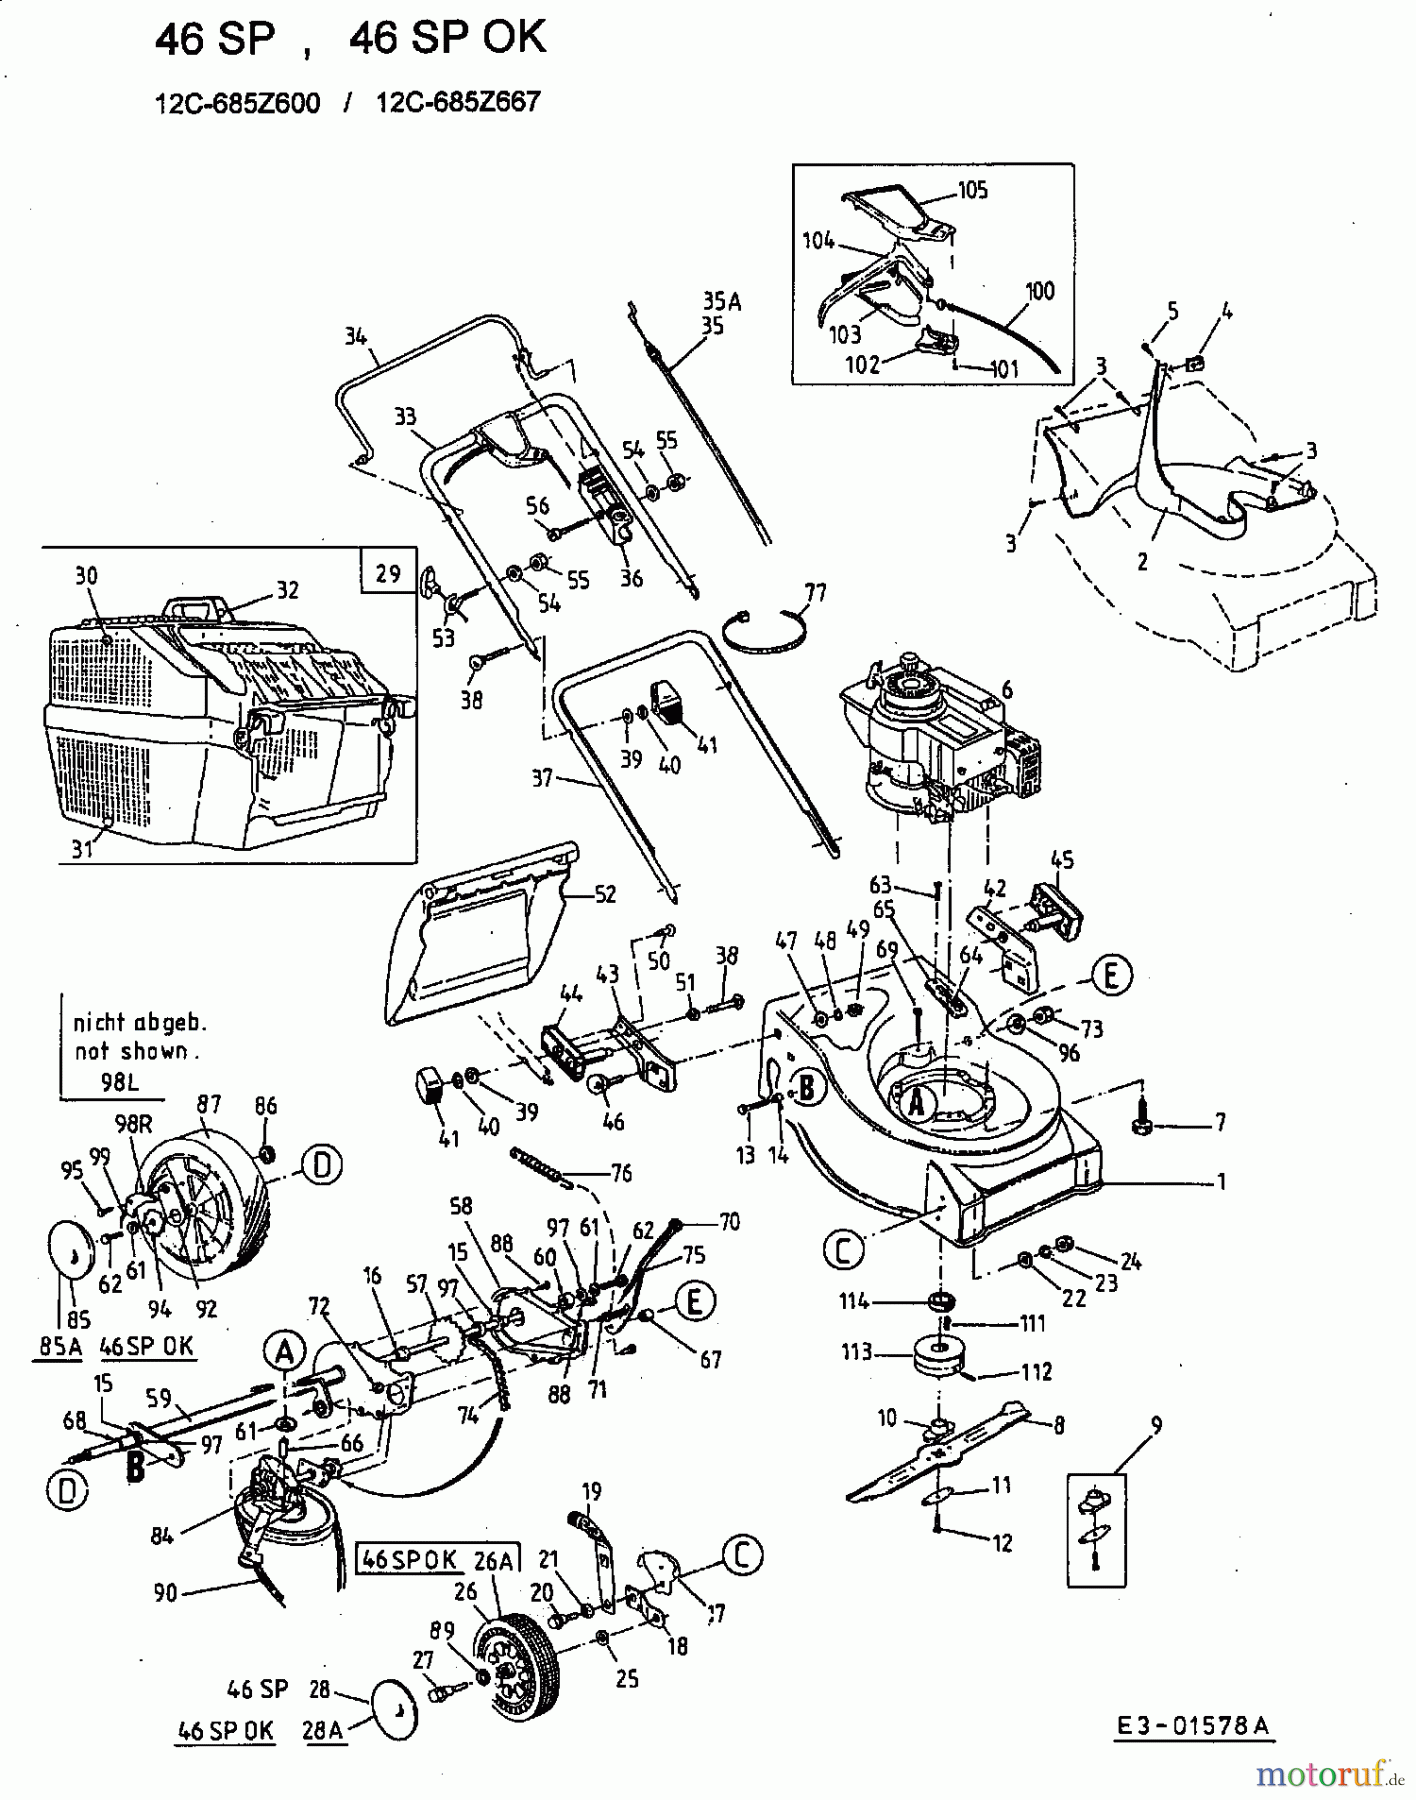  Ok Motormäher mit Antrieb 46 SP 12C-685Z667  (2002) Grundgerät